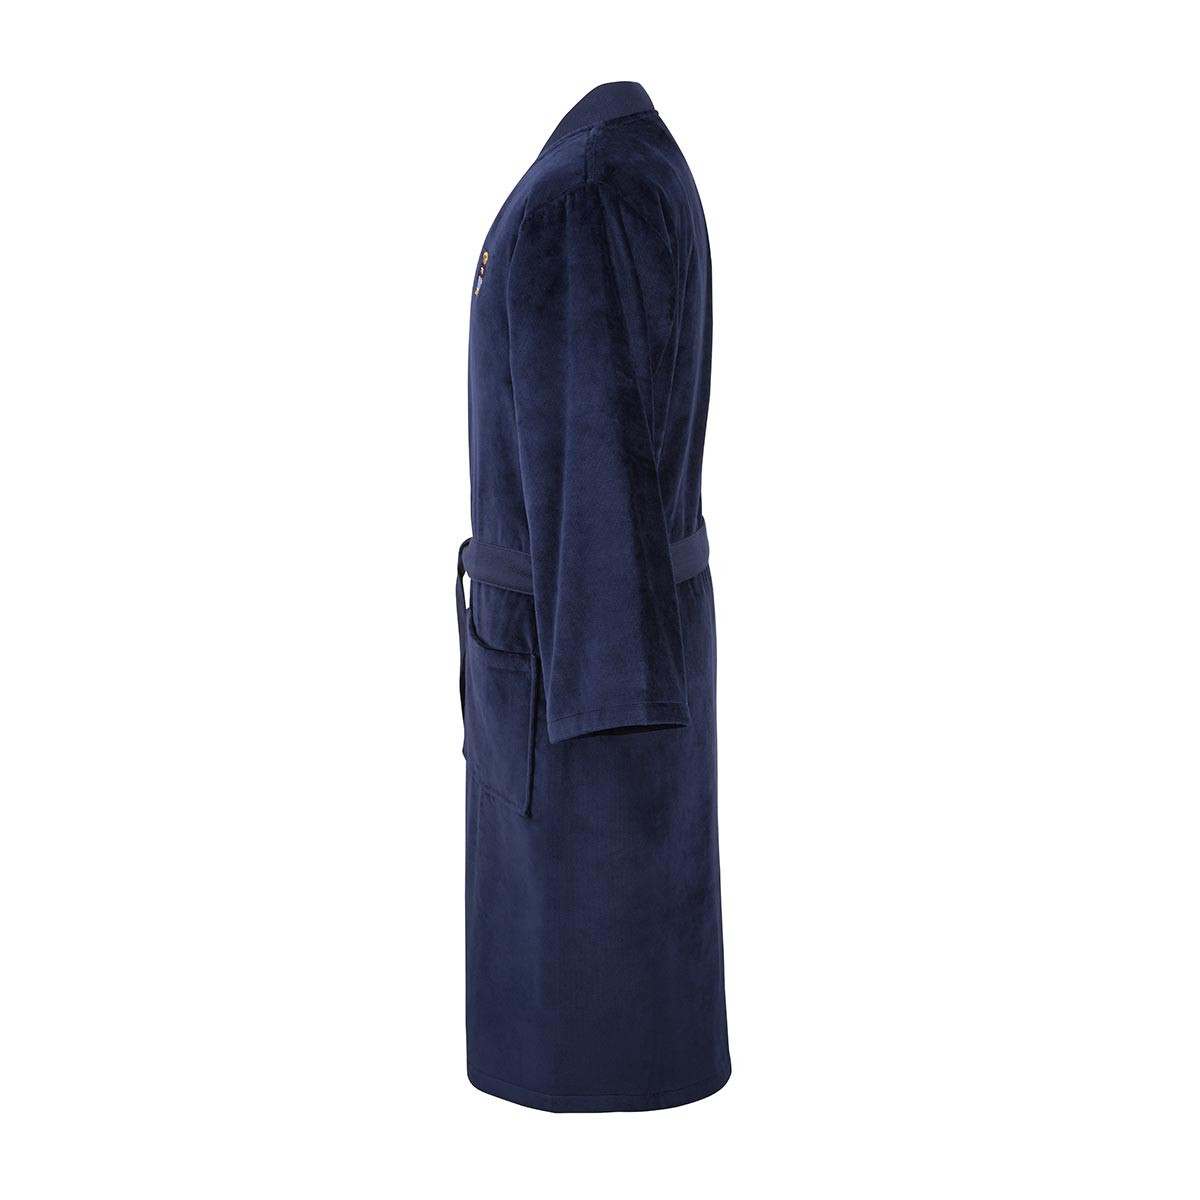 халат кимоно Ralph Lauren Teddy - купить в магазине Yves Delorme Russia